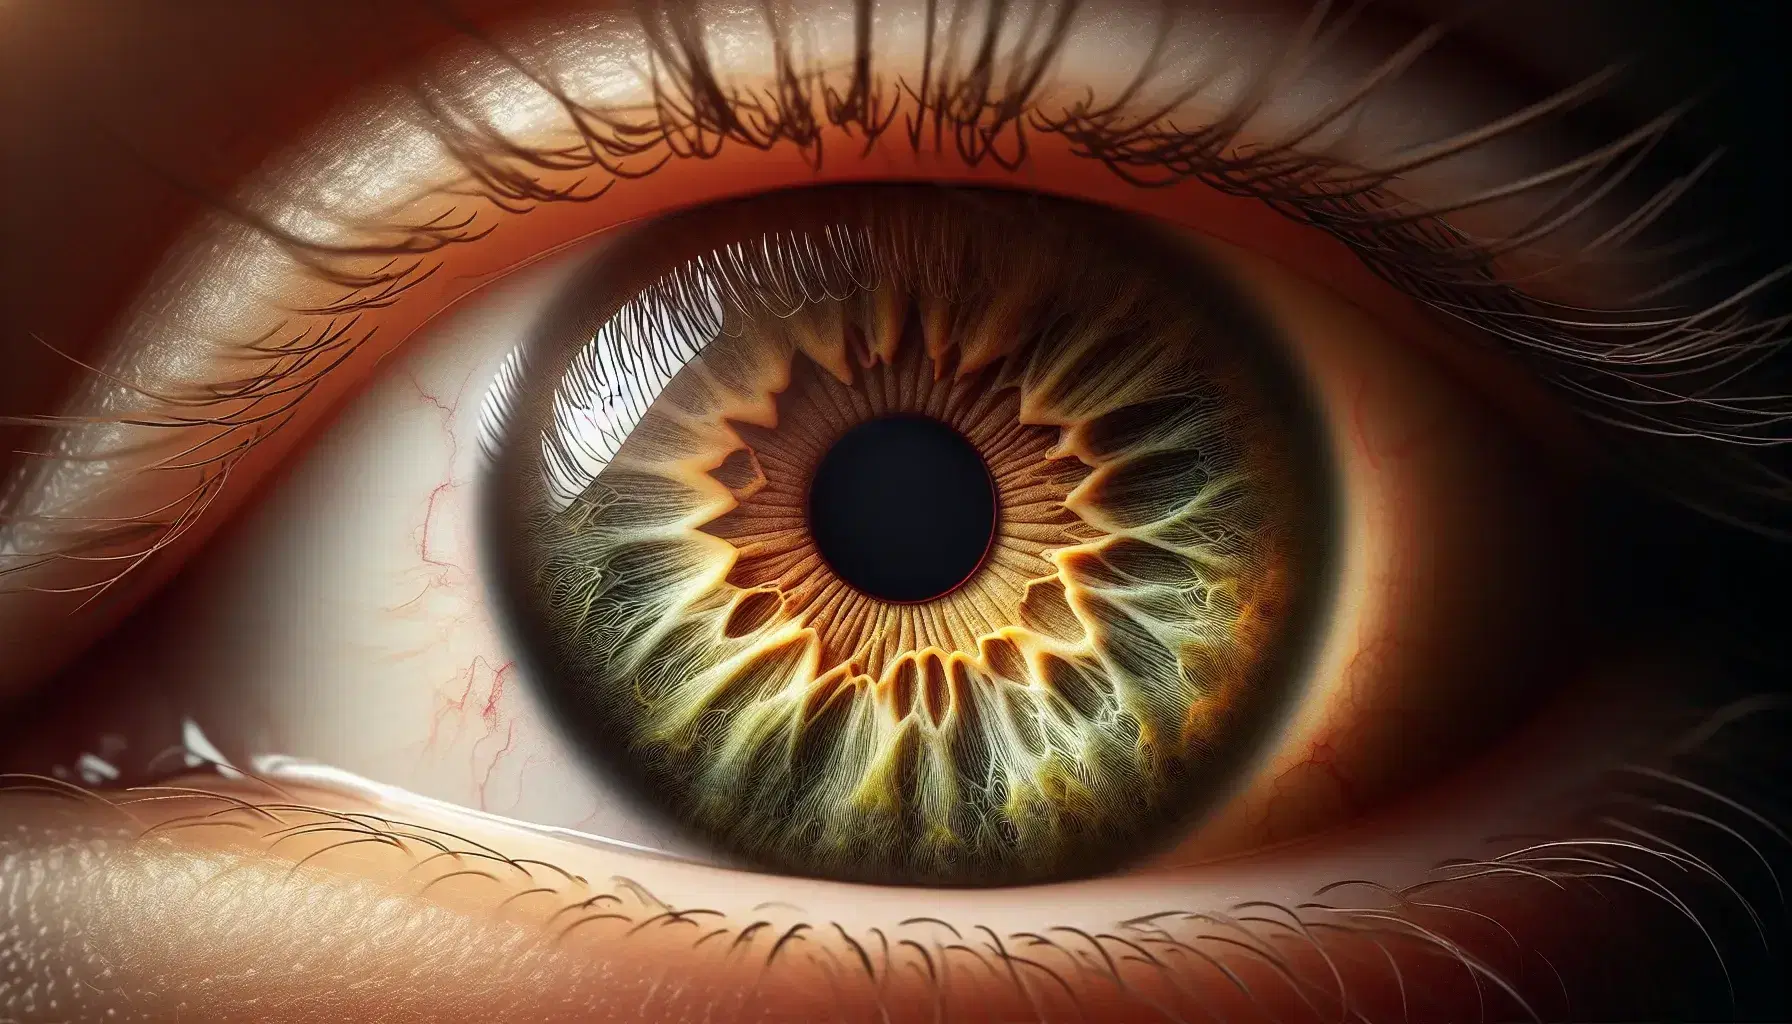 Primer plano detallado de ojo humano con iris de tonos marrón dorado a verde oliva, pupila negra, pestañas negras y reflejo de luz.